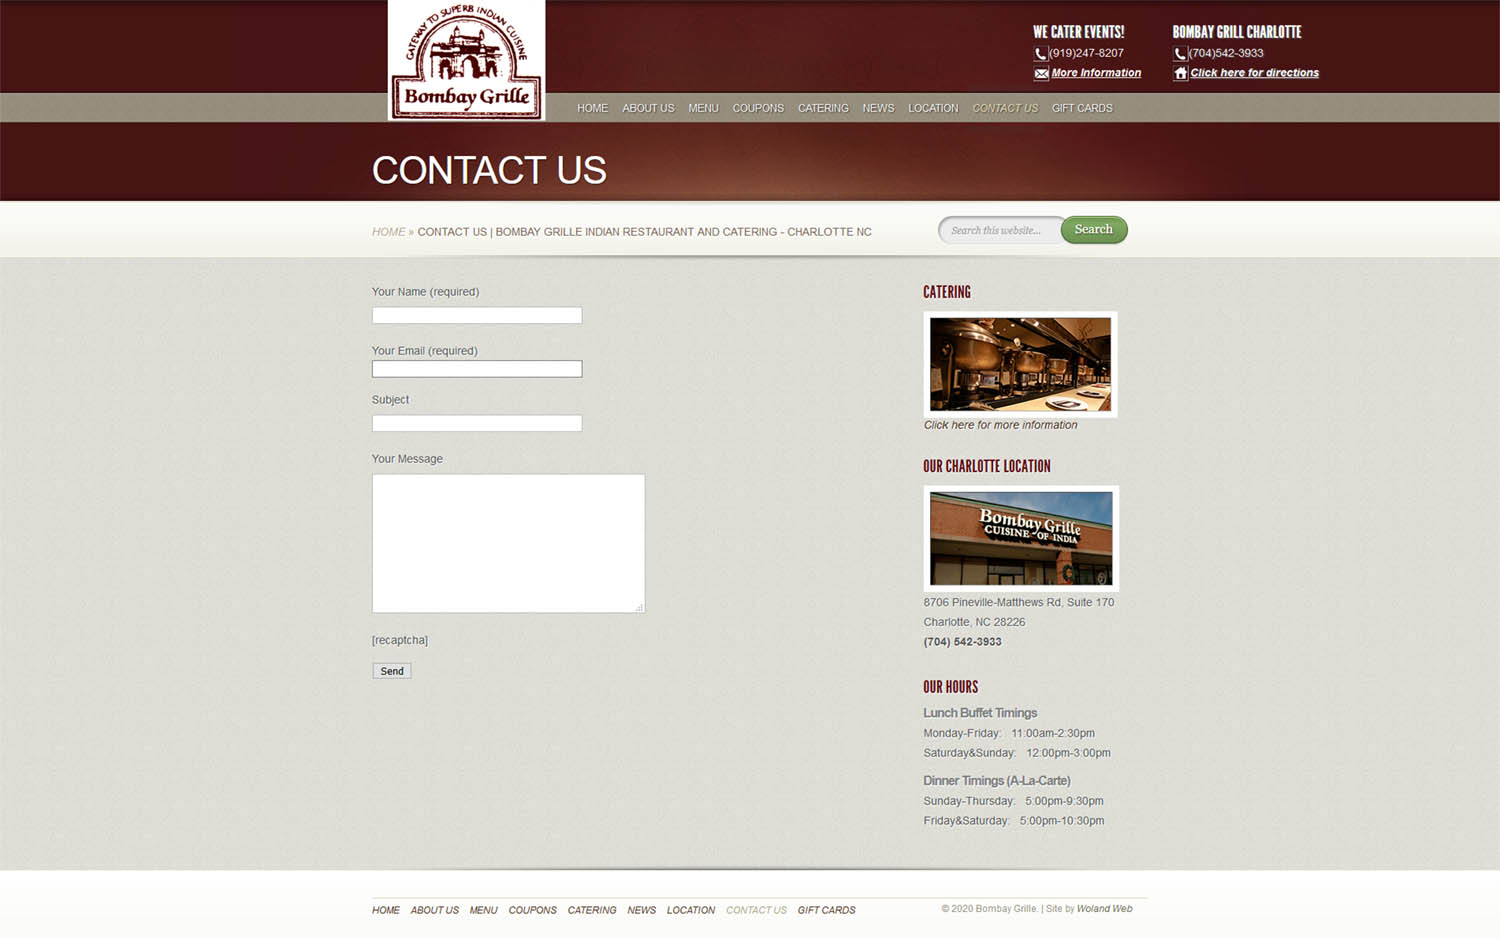 Bombay Grille restaurant website contact screenshot